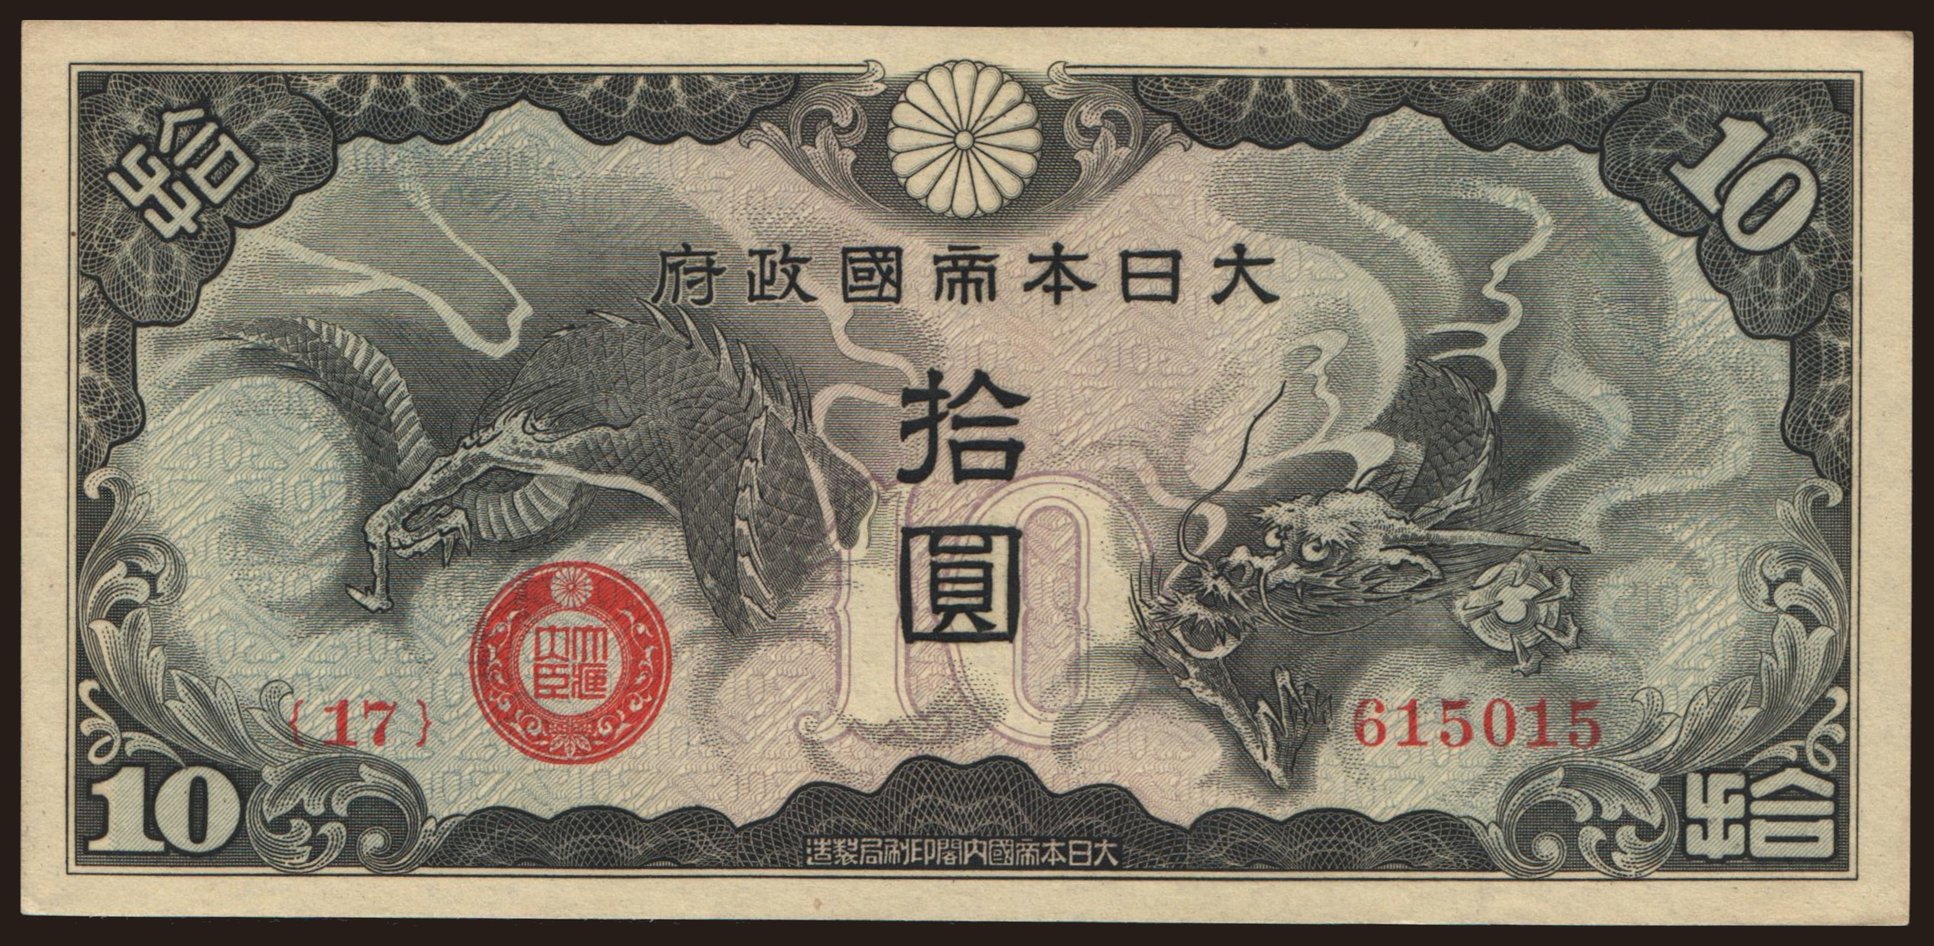 10 yen, 1940